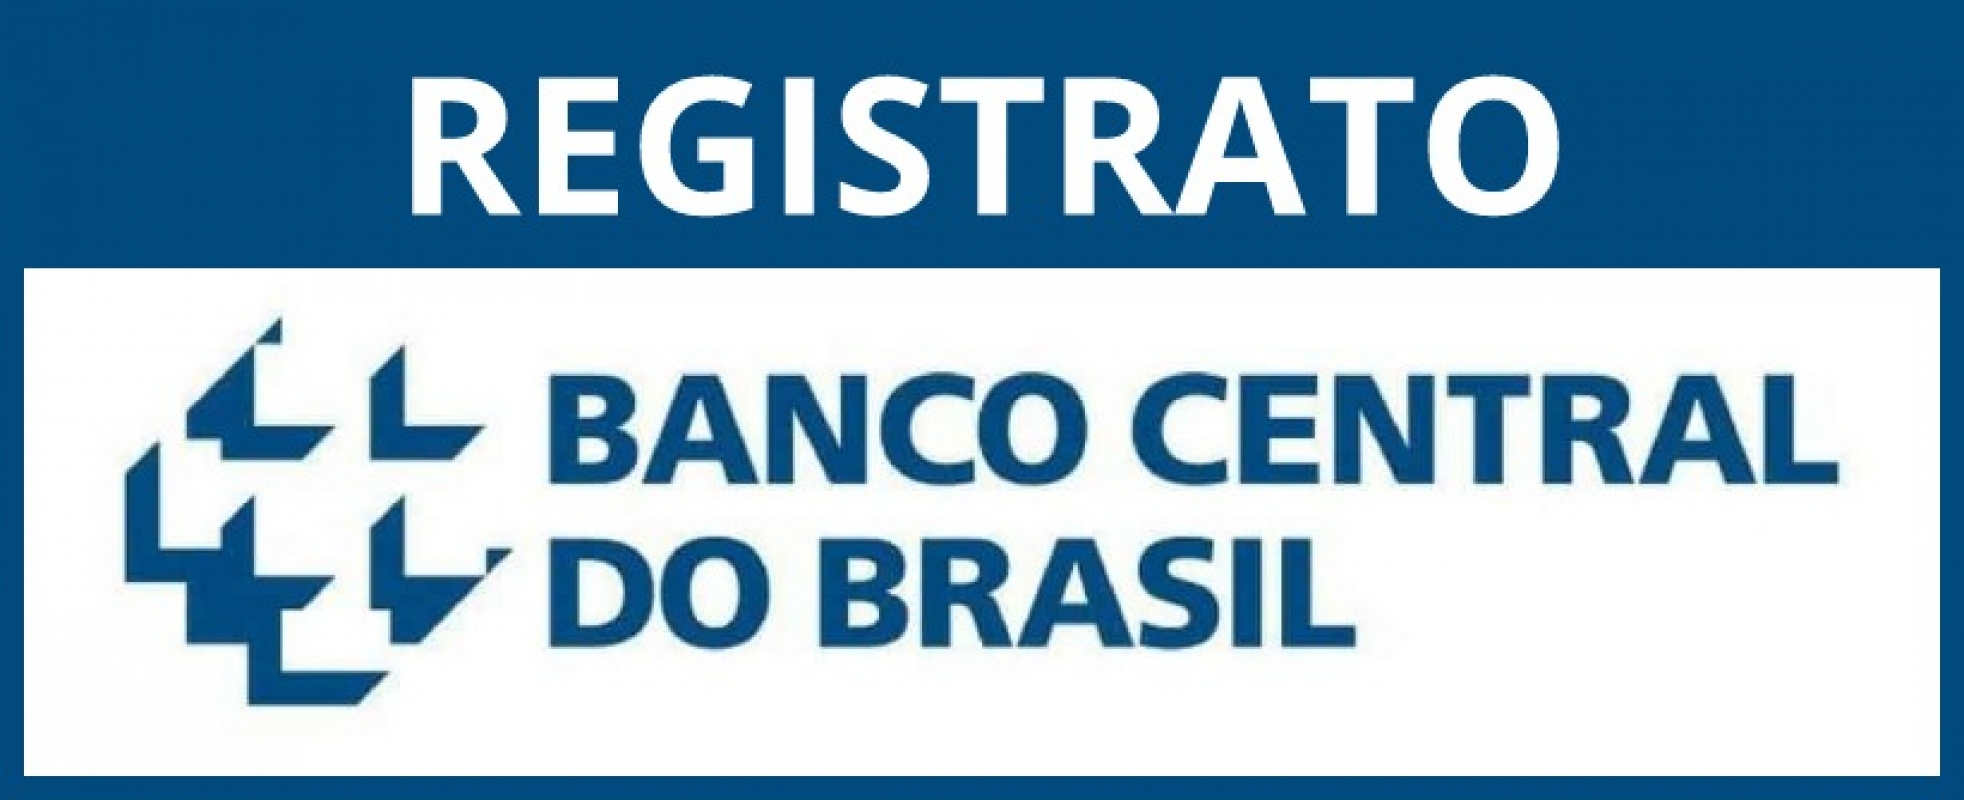 Registrato - Banco Central